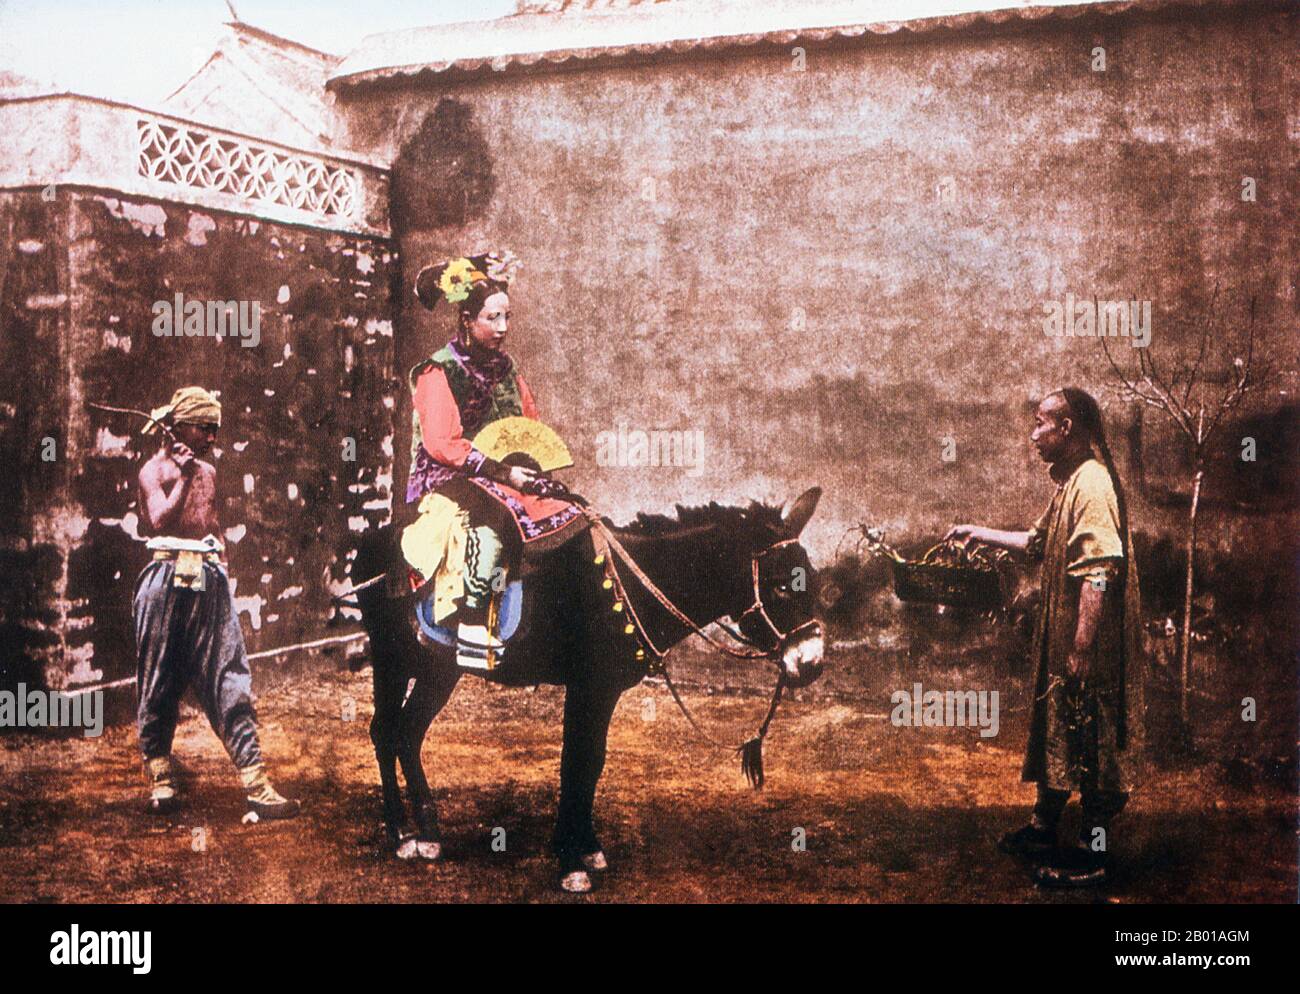 Chine : une femme de sa finerie de Qing prend un âne, photo de la fin de la dynastie de Qing, éventuellement de John Thomson (1837-1921) ou Lai Along (1839-1890), 1887. Dans cette photo posée avec soin, la femme semble habillée comme une mariée se préparant à monter à son mariage. Banque D'Images